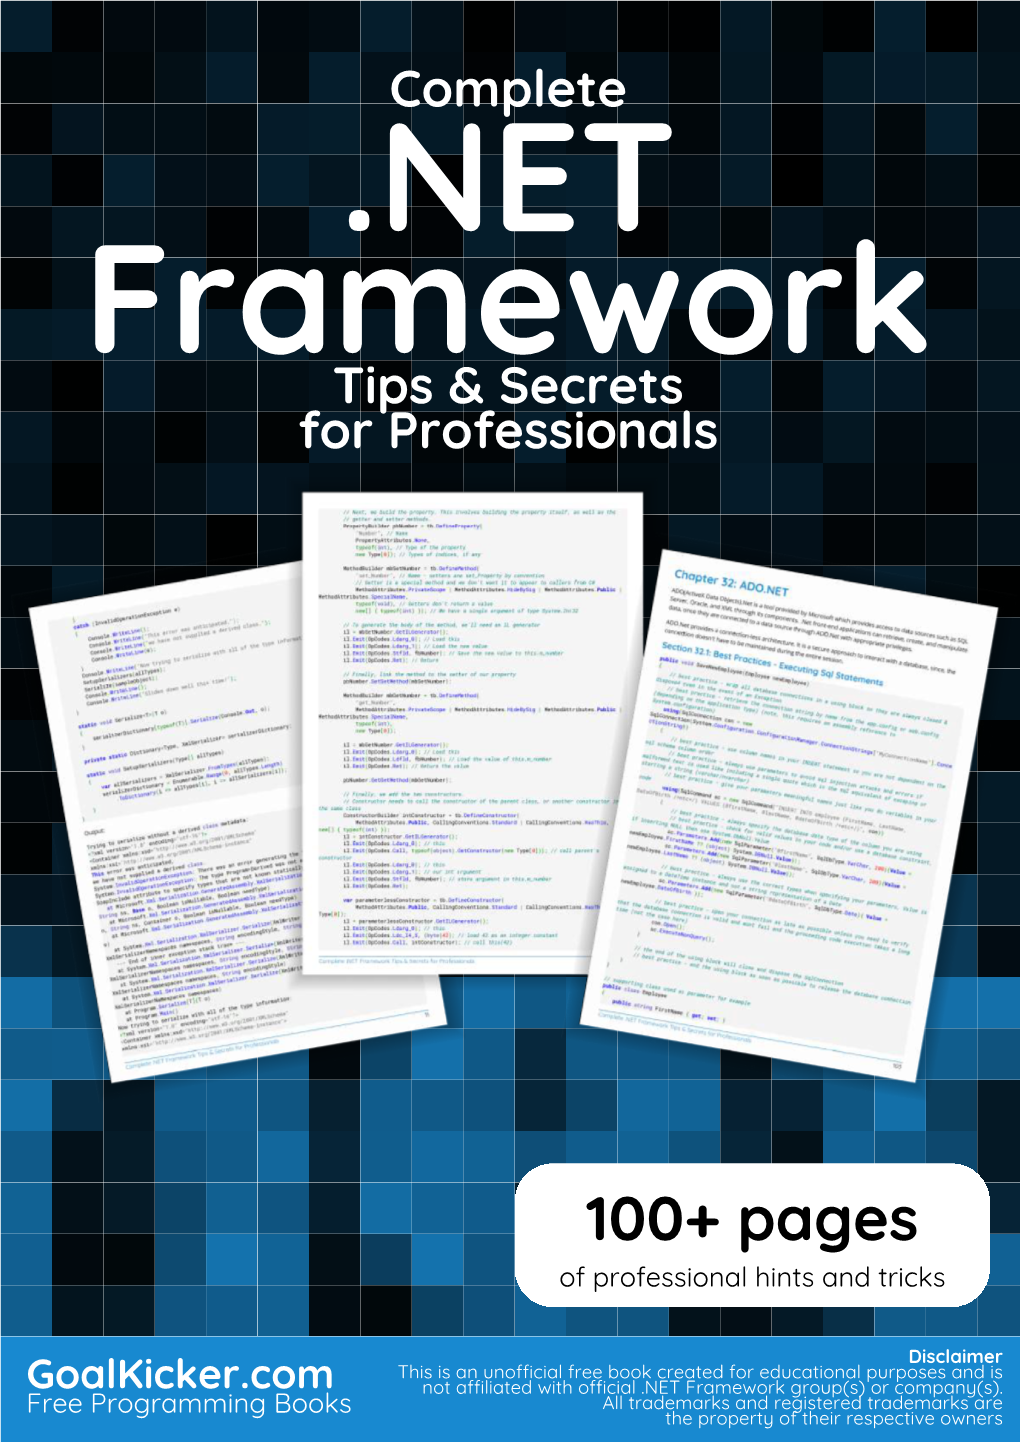 Complete .NET Framework Secrets & Tips for Professionals